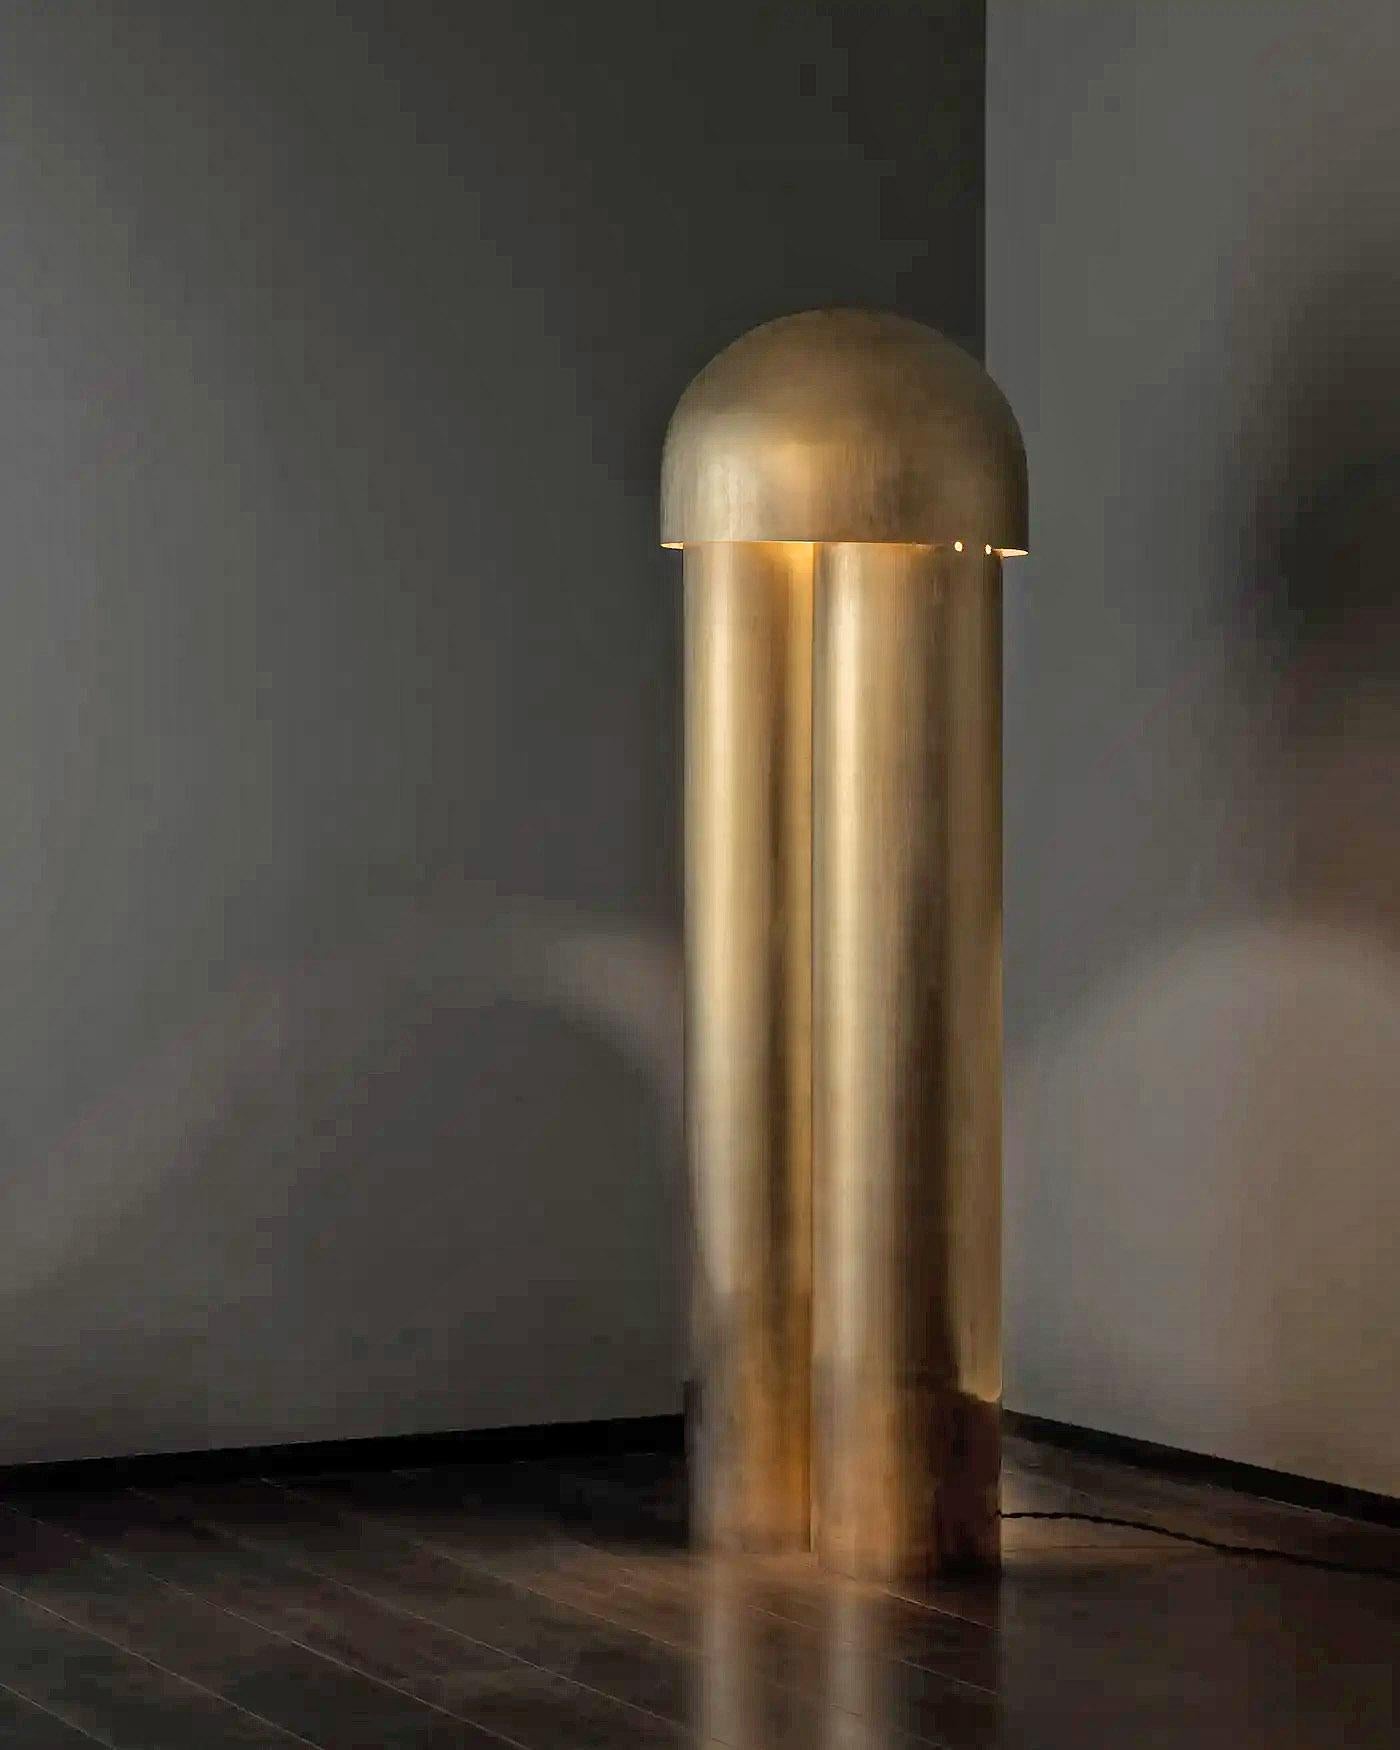 Contemporary Aged Brass Sculpted Floor Lamp, Monolith von Paul Matter

Die Monolith-Lampe ist eine Übung in Reduktion. Aus einem einzigen Körper mit Hilfe einfacher Rillen und Falten geformt, sorgen die Geometrie der Lampen, die